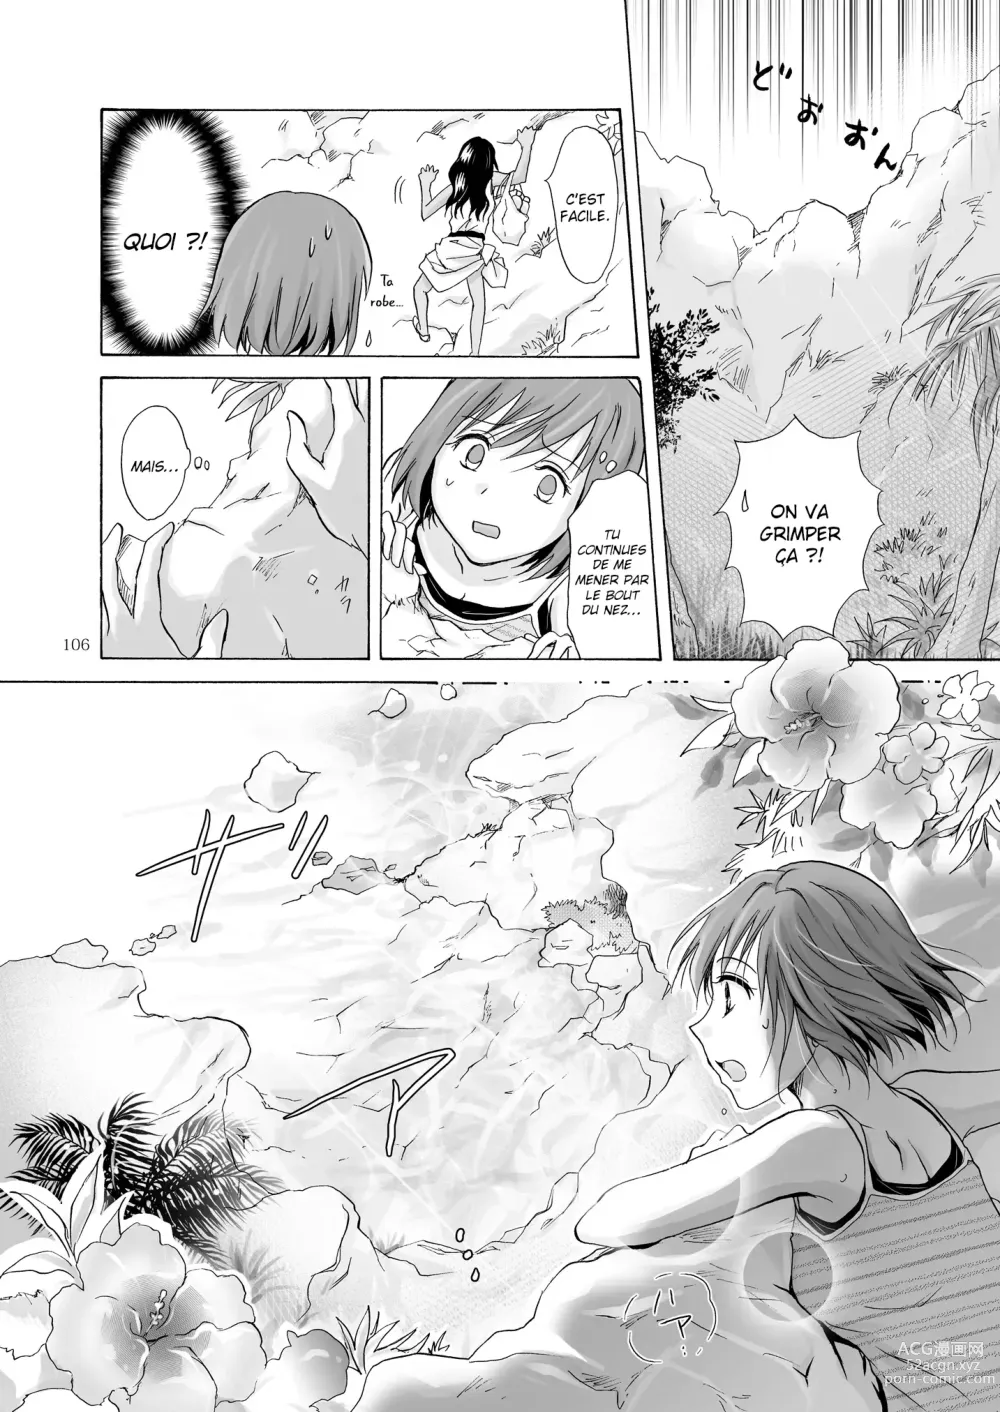 Page 105 of doujinshi La mer, toi et le soleil